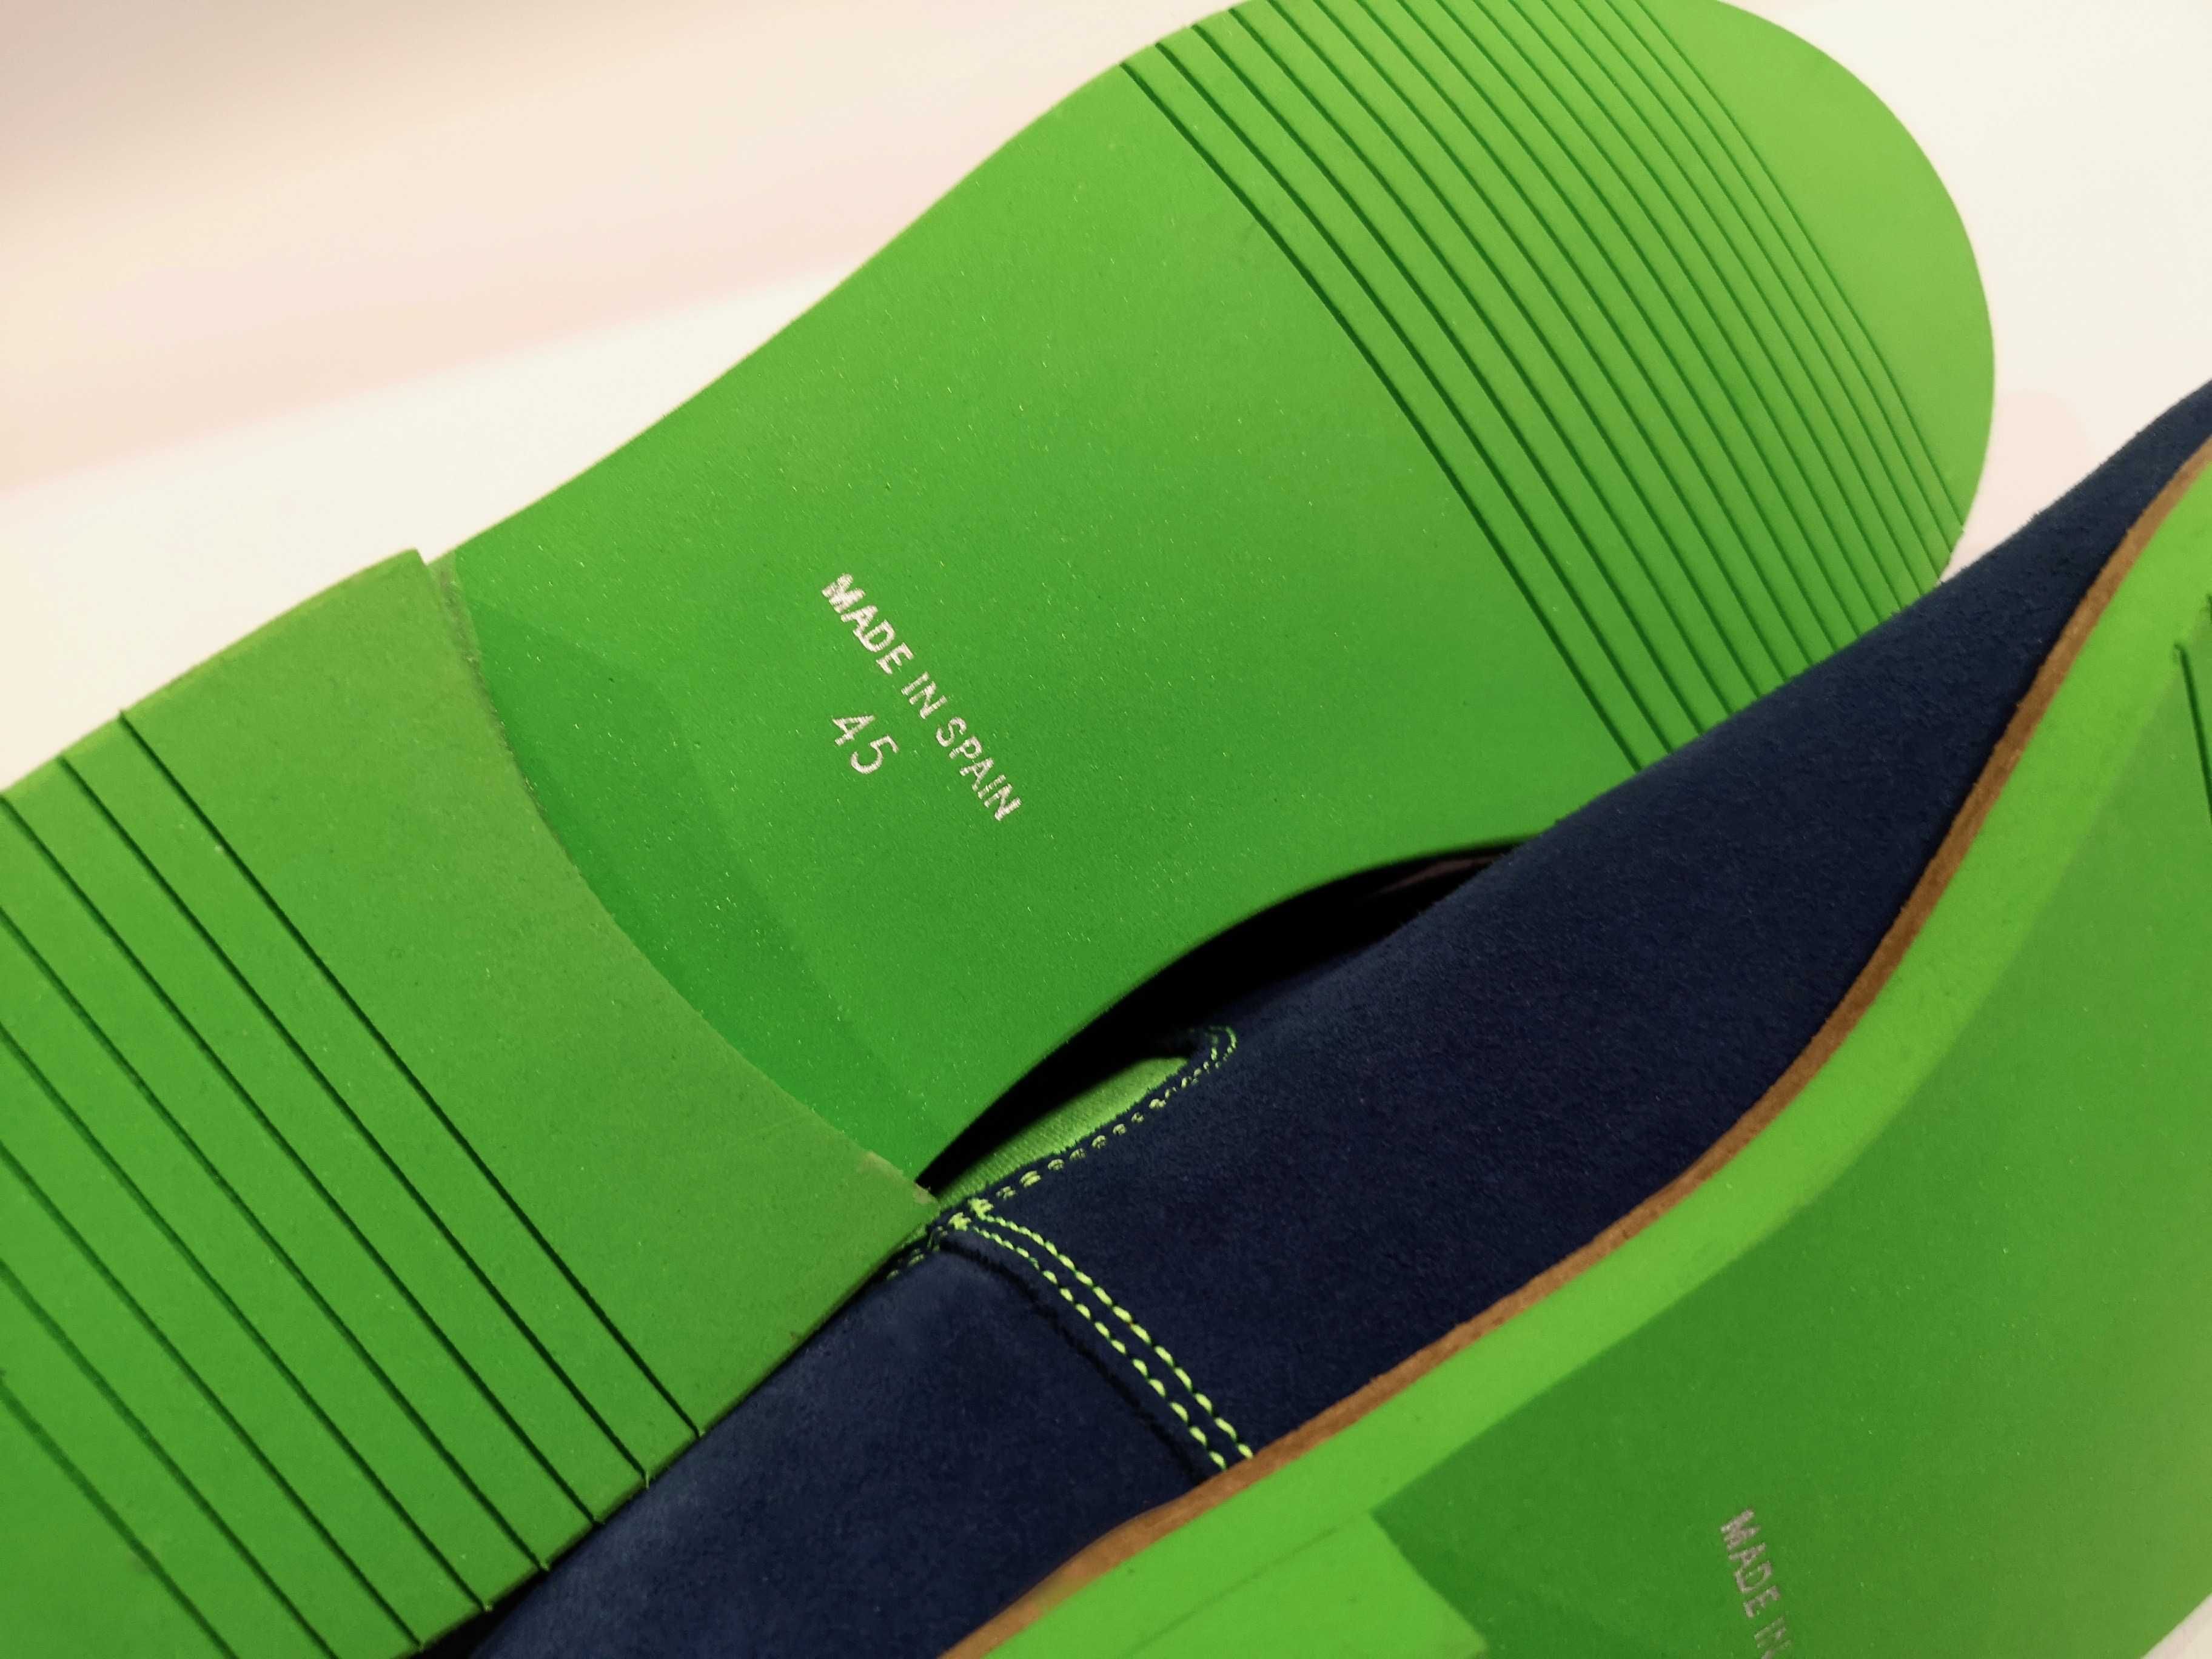 Ботинки сапоги челси Neon Boots 44 натуральная кожа Made in Spain